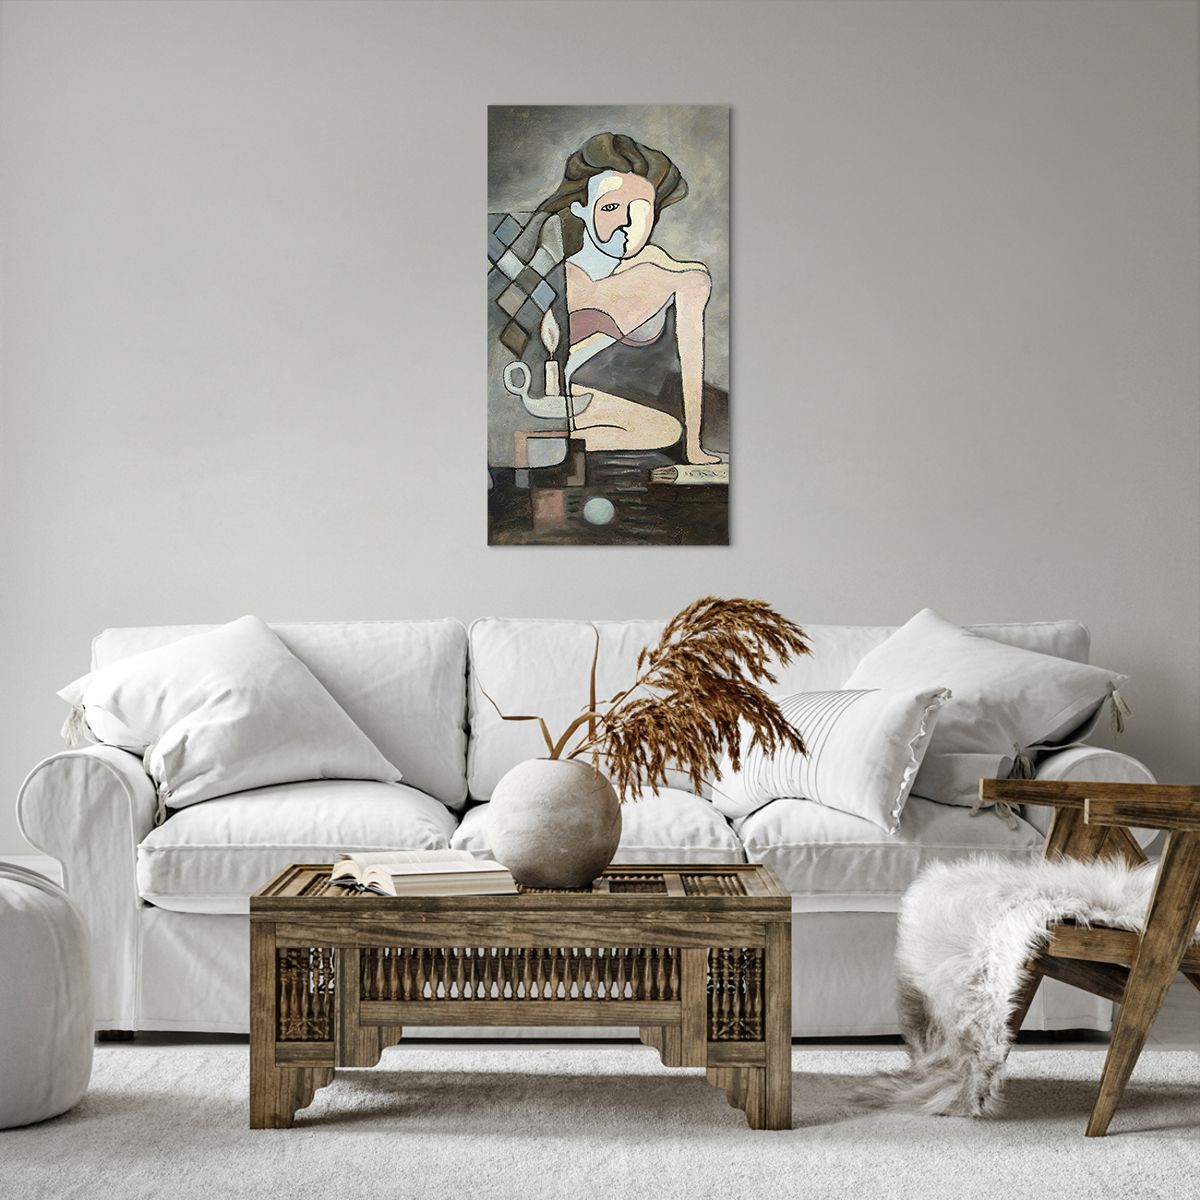 Bild auf Leinwand Abstraktion, Bild auf Leinwand Kubismus, Bild auf Leinwand Personen, Bild auf Leinwand Kunst, Bild auf Leinwand Malerei